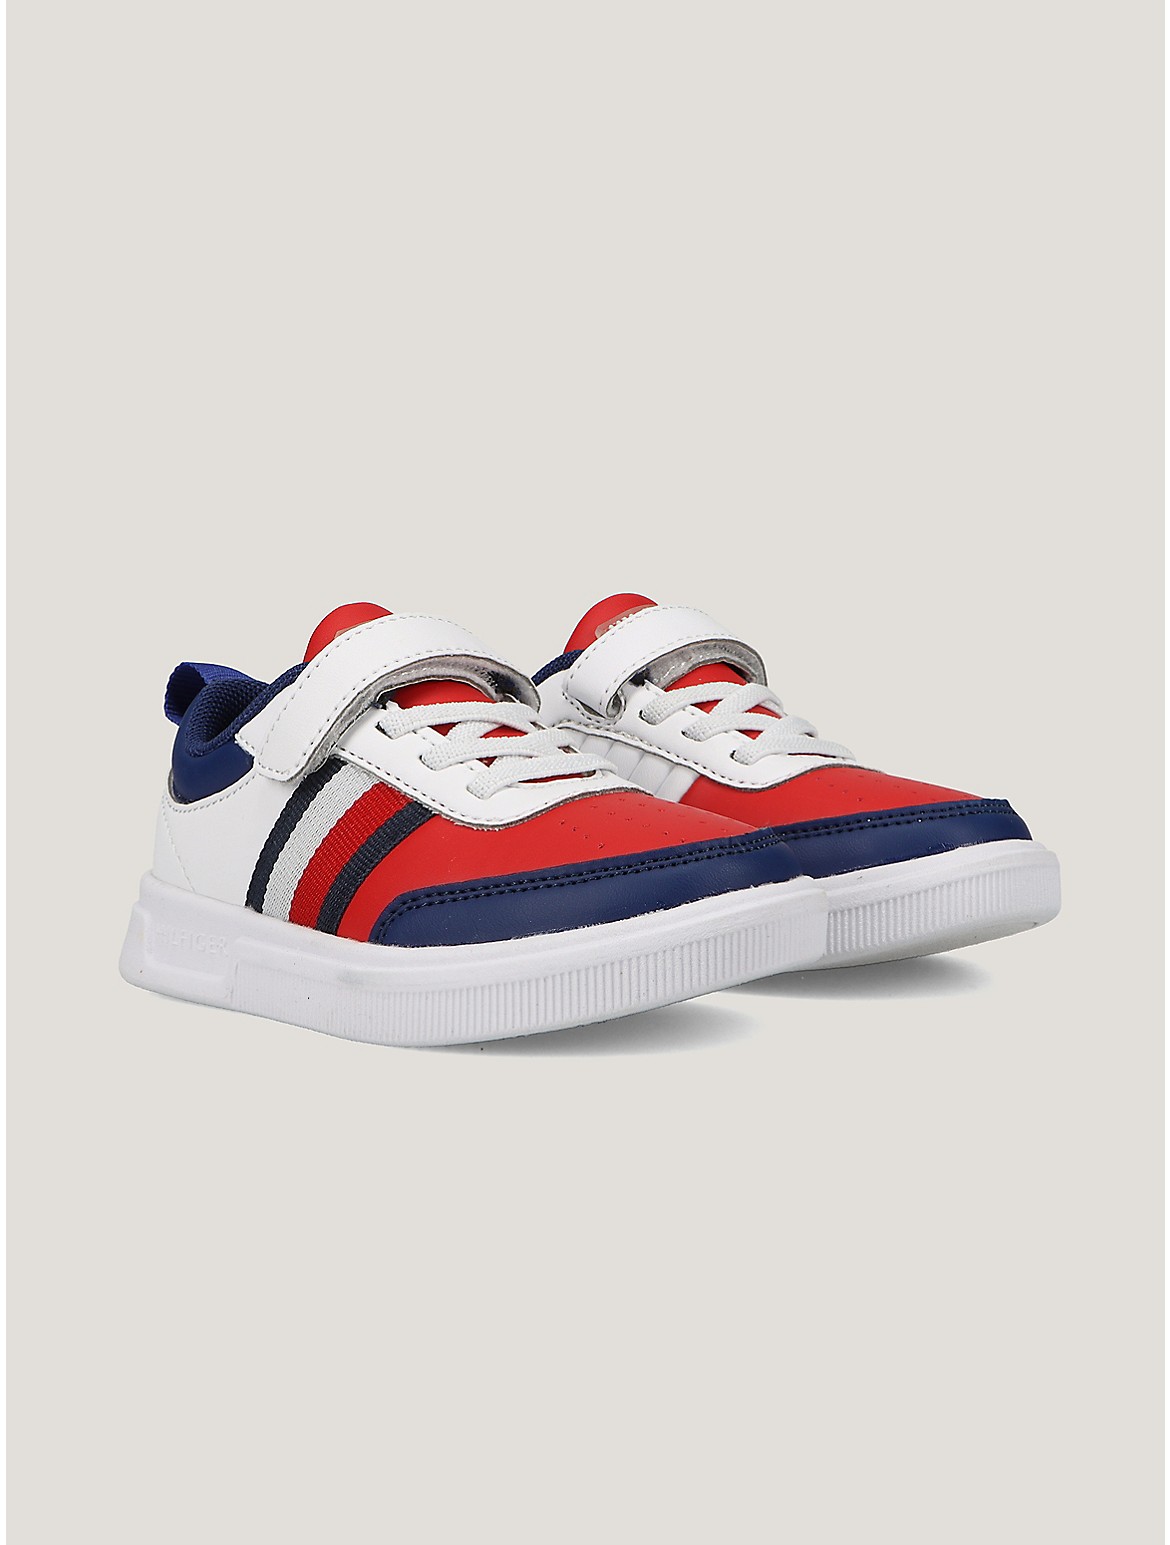 Tommy Hilfiger Boys' Little Kids' Colorblock Strap Sneaker - Multi - 6